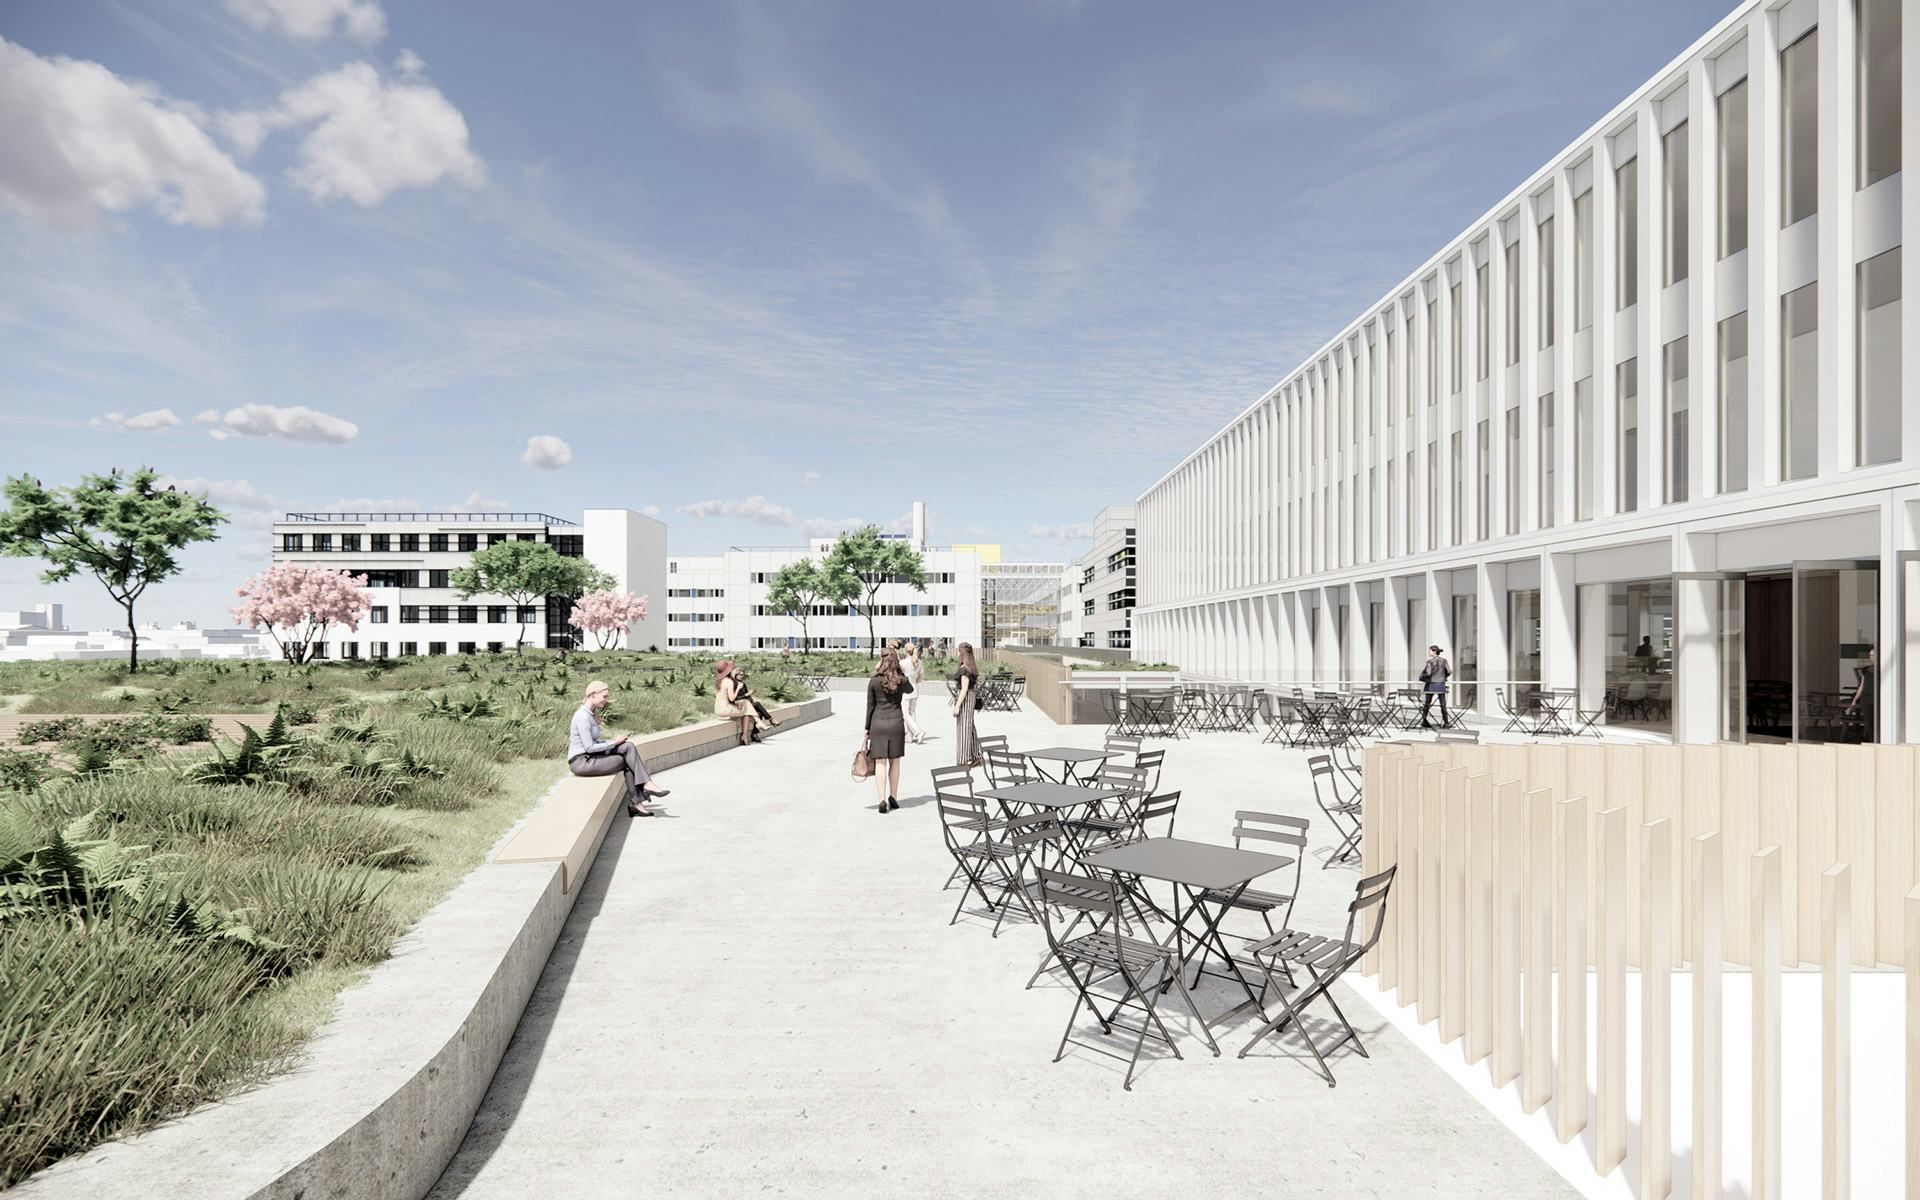 Gebouw T UMC Maastricht word ontworpen door Wiegerinck (impressie)